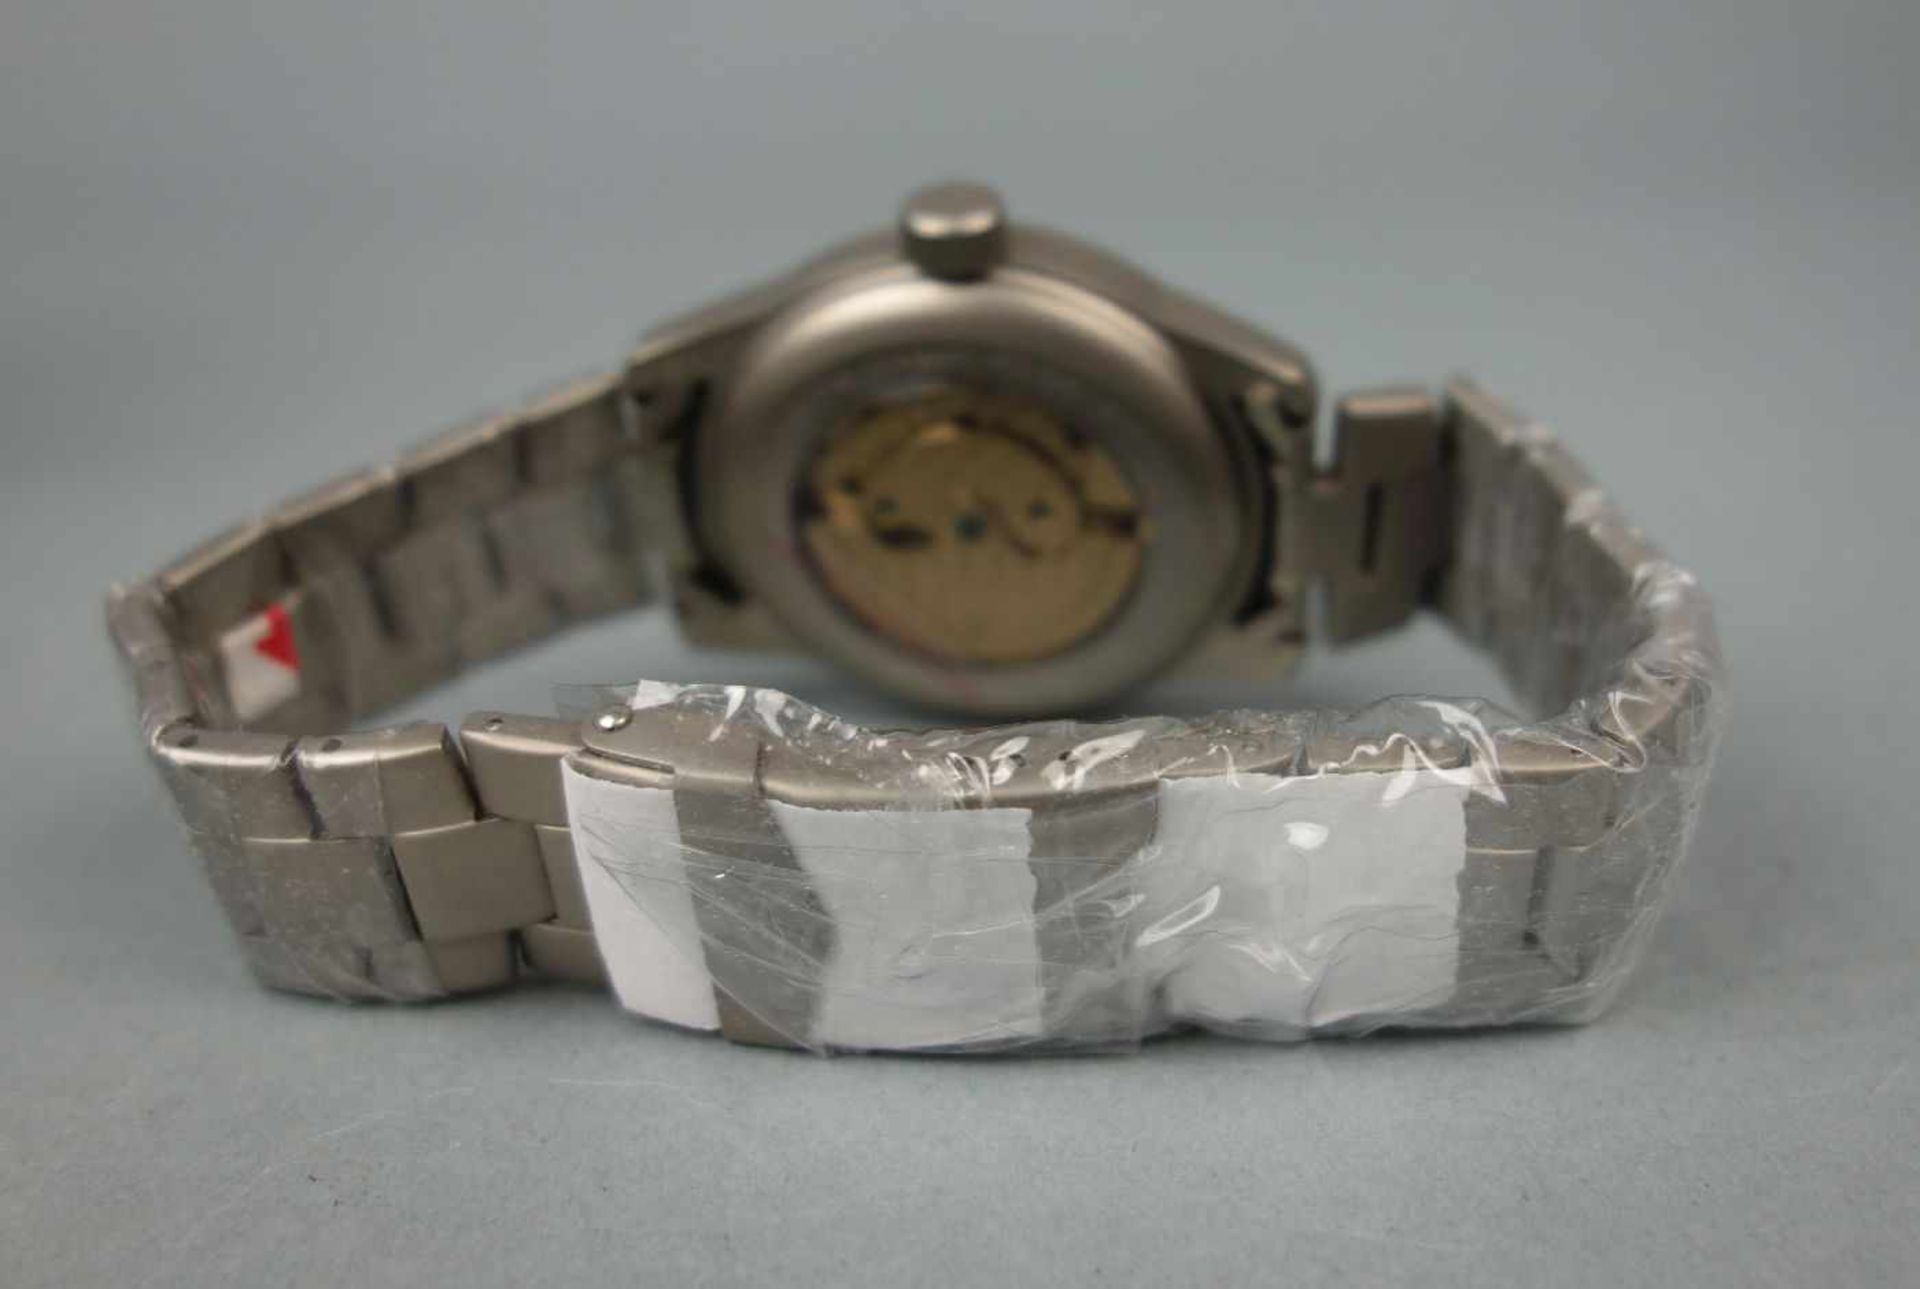 NEUWERTIGE ENGELHARDT ARMBANDUHR / wristwatch, Automatik-Uhr. Rundes mattiertes Stahlgehäuse mit - Bild 2 aus 3